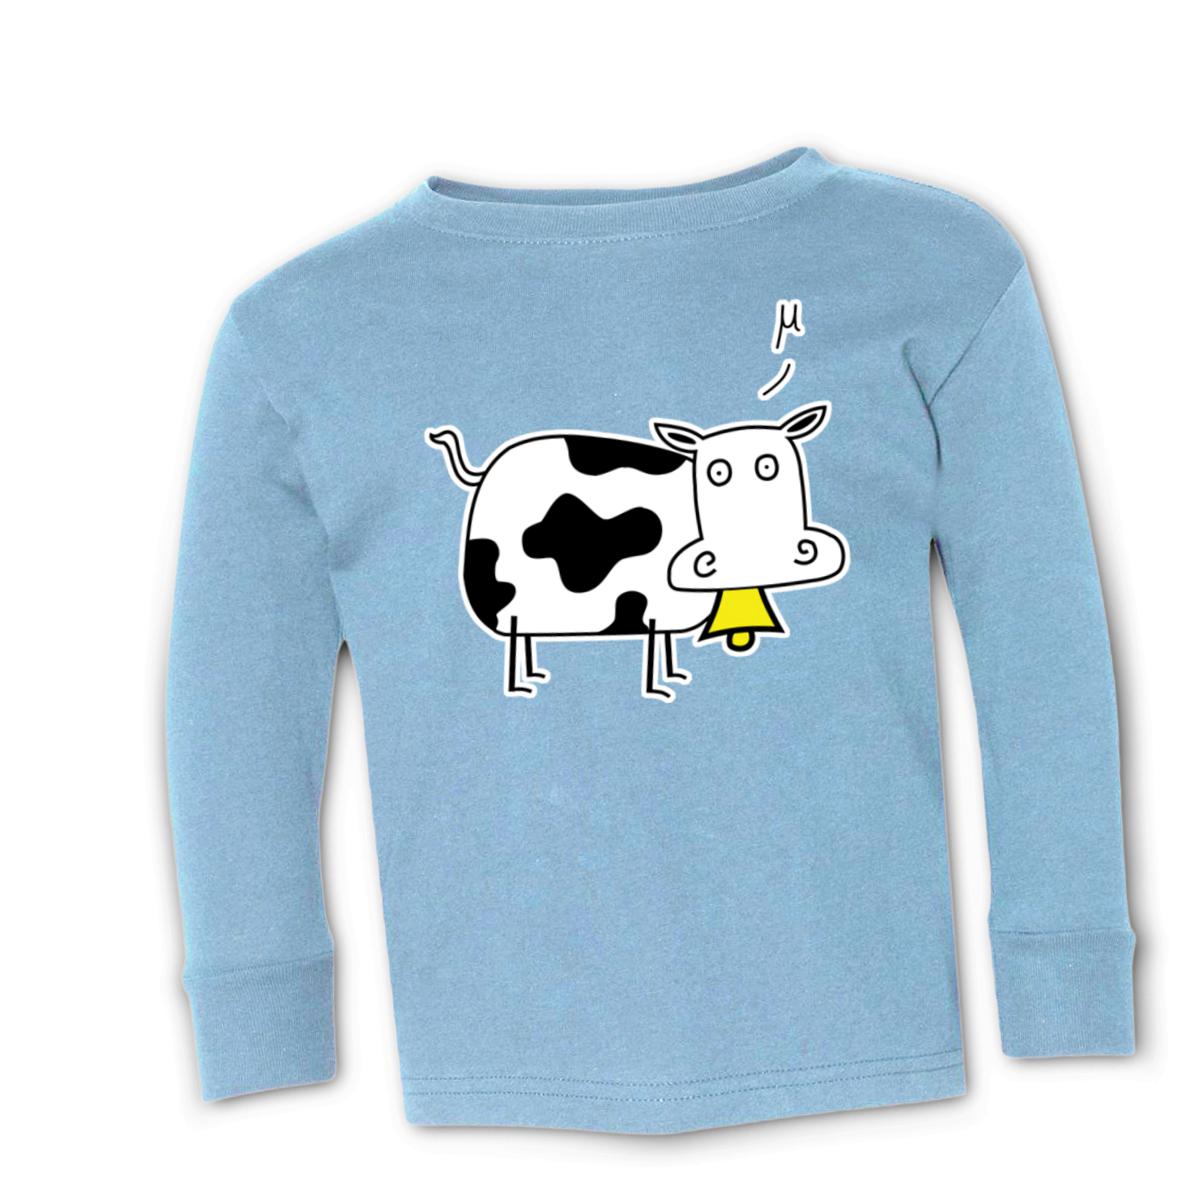 Mu Cow Toddler Long Sleeve Tee 56T light-blue